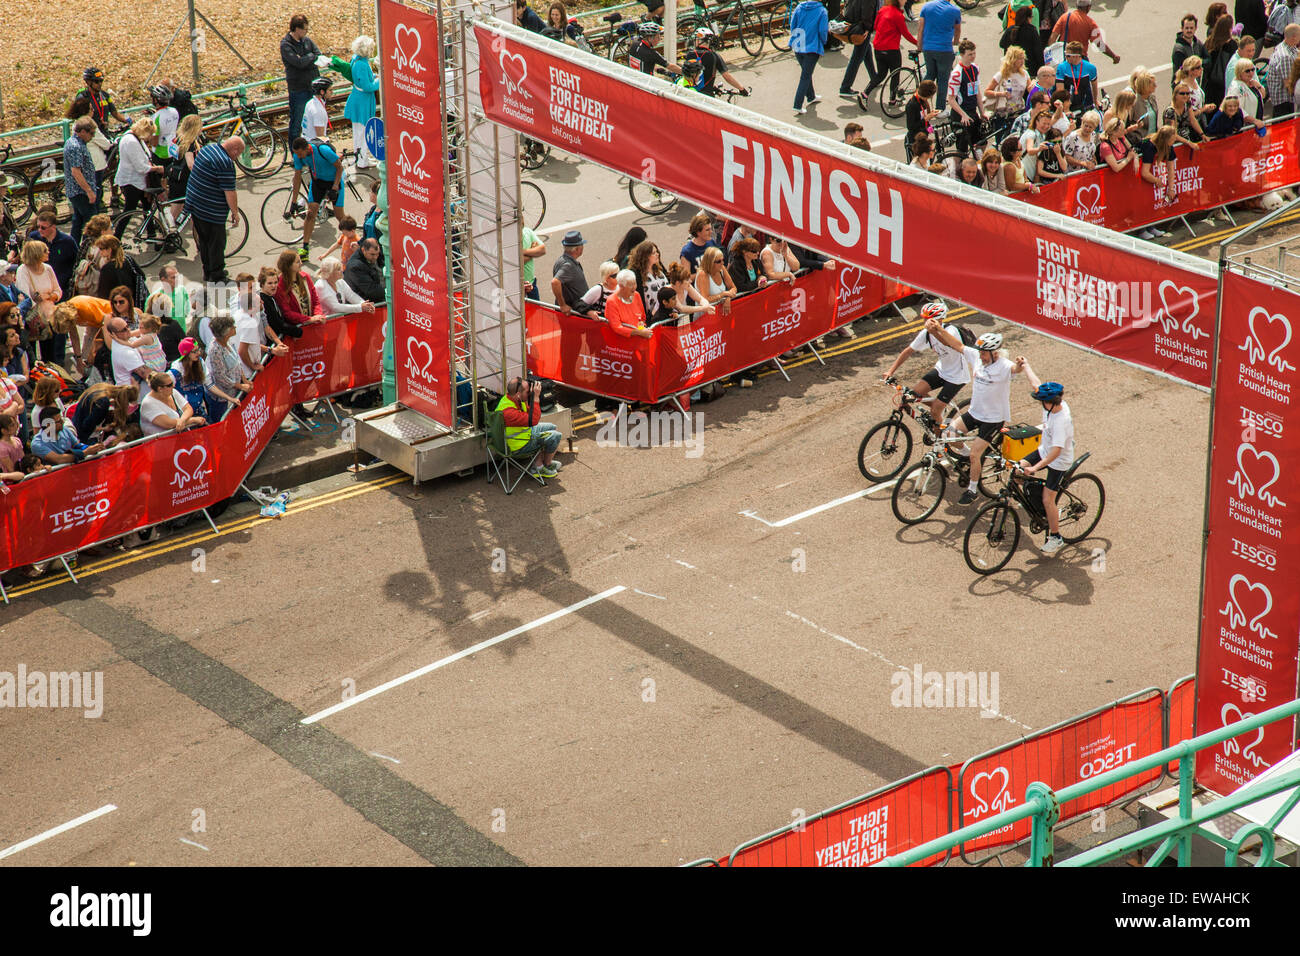 Brighton, UK. 21 Juin, 2015. Les cyclistes passent la ligne d'arrivée main dans la main. Foule de badauds cheers. Slawek Crédit : Staszczuk/Alamy Live News Banque D'Images